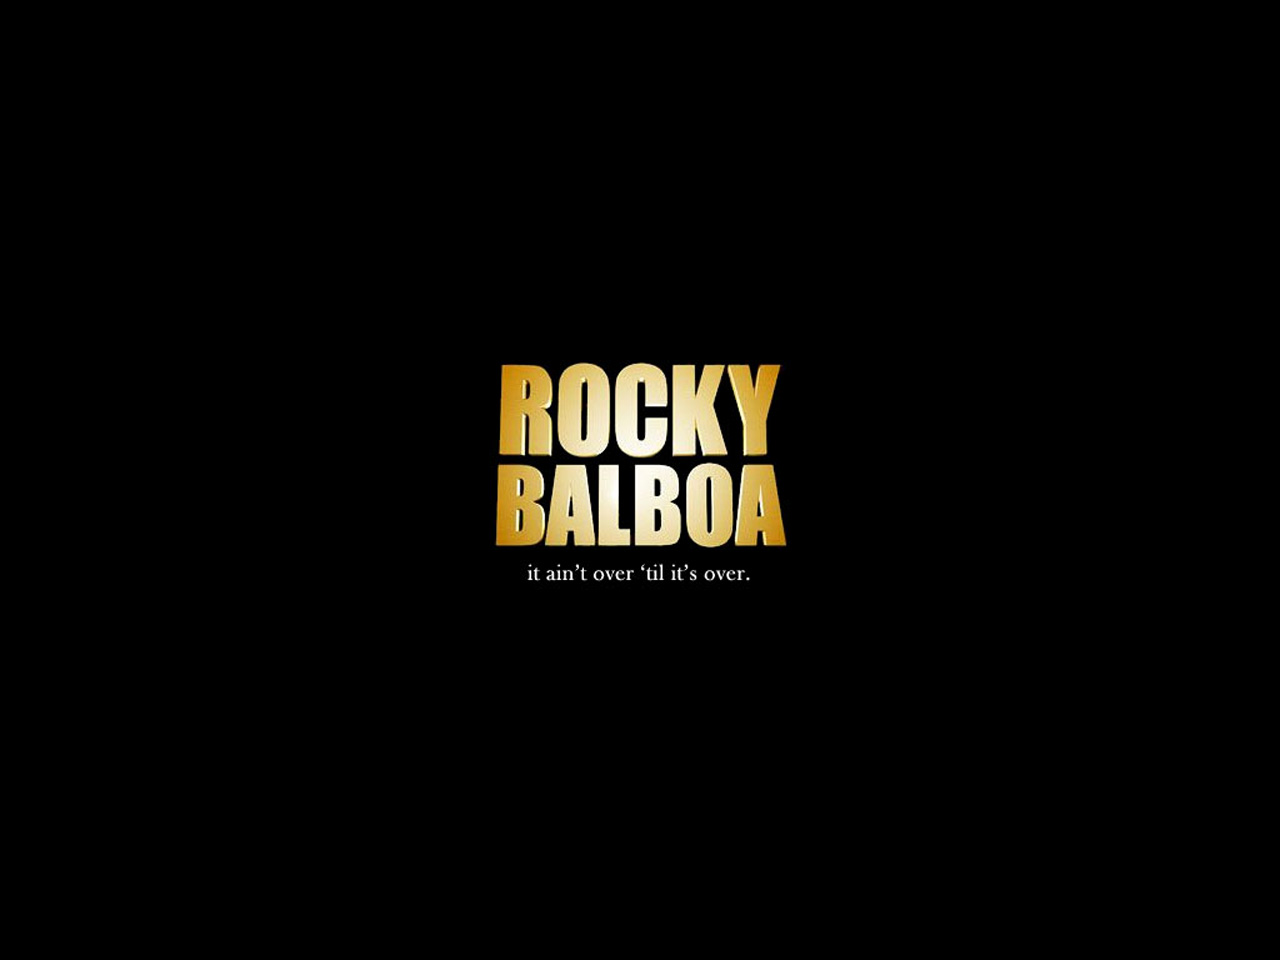 Wallpapers Rocky Balboa Papel De Parede 1280x960 | #46917 #rocky ...